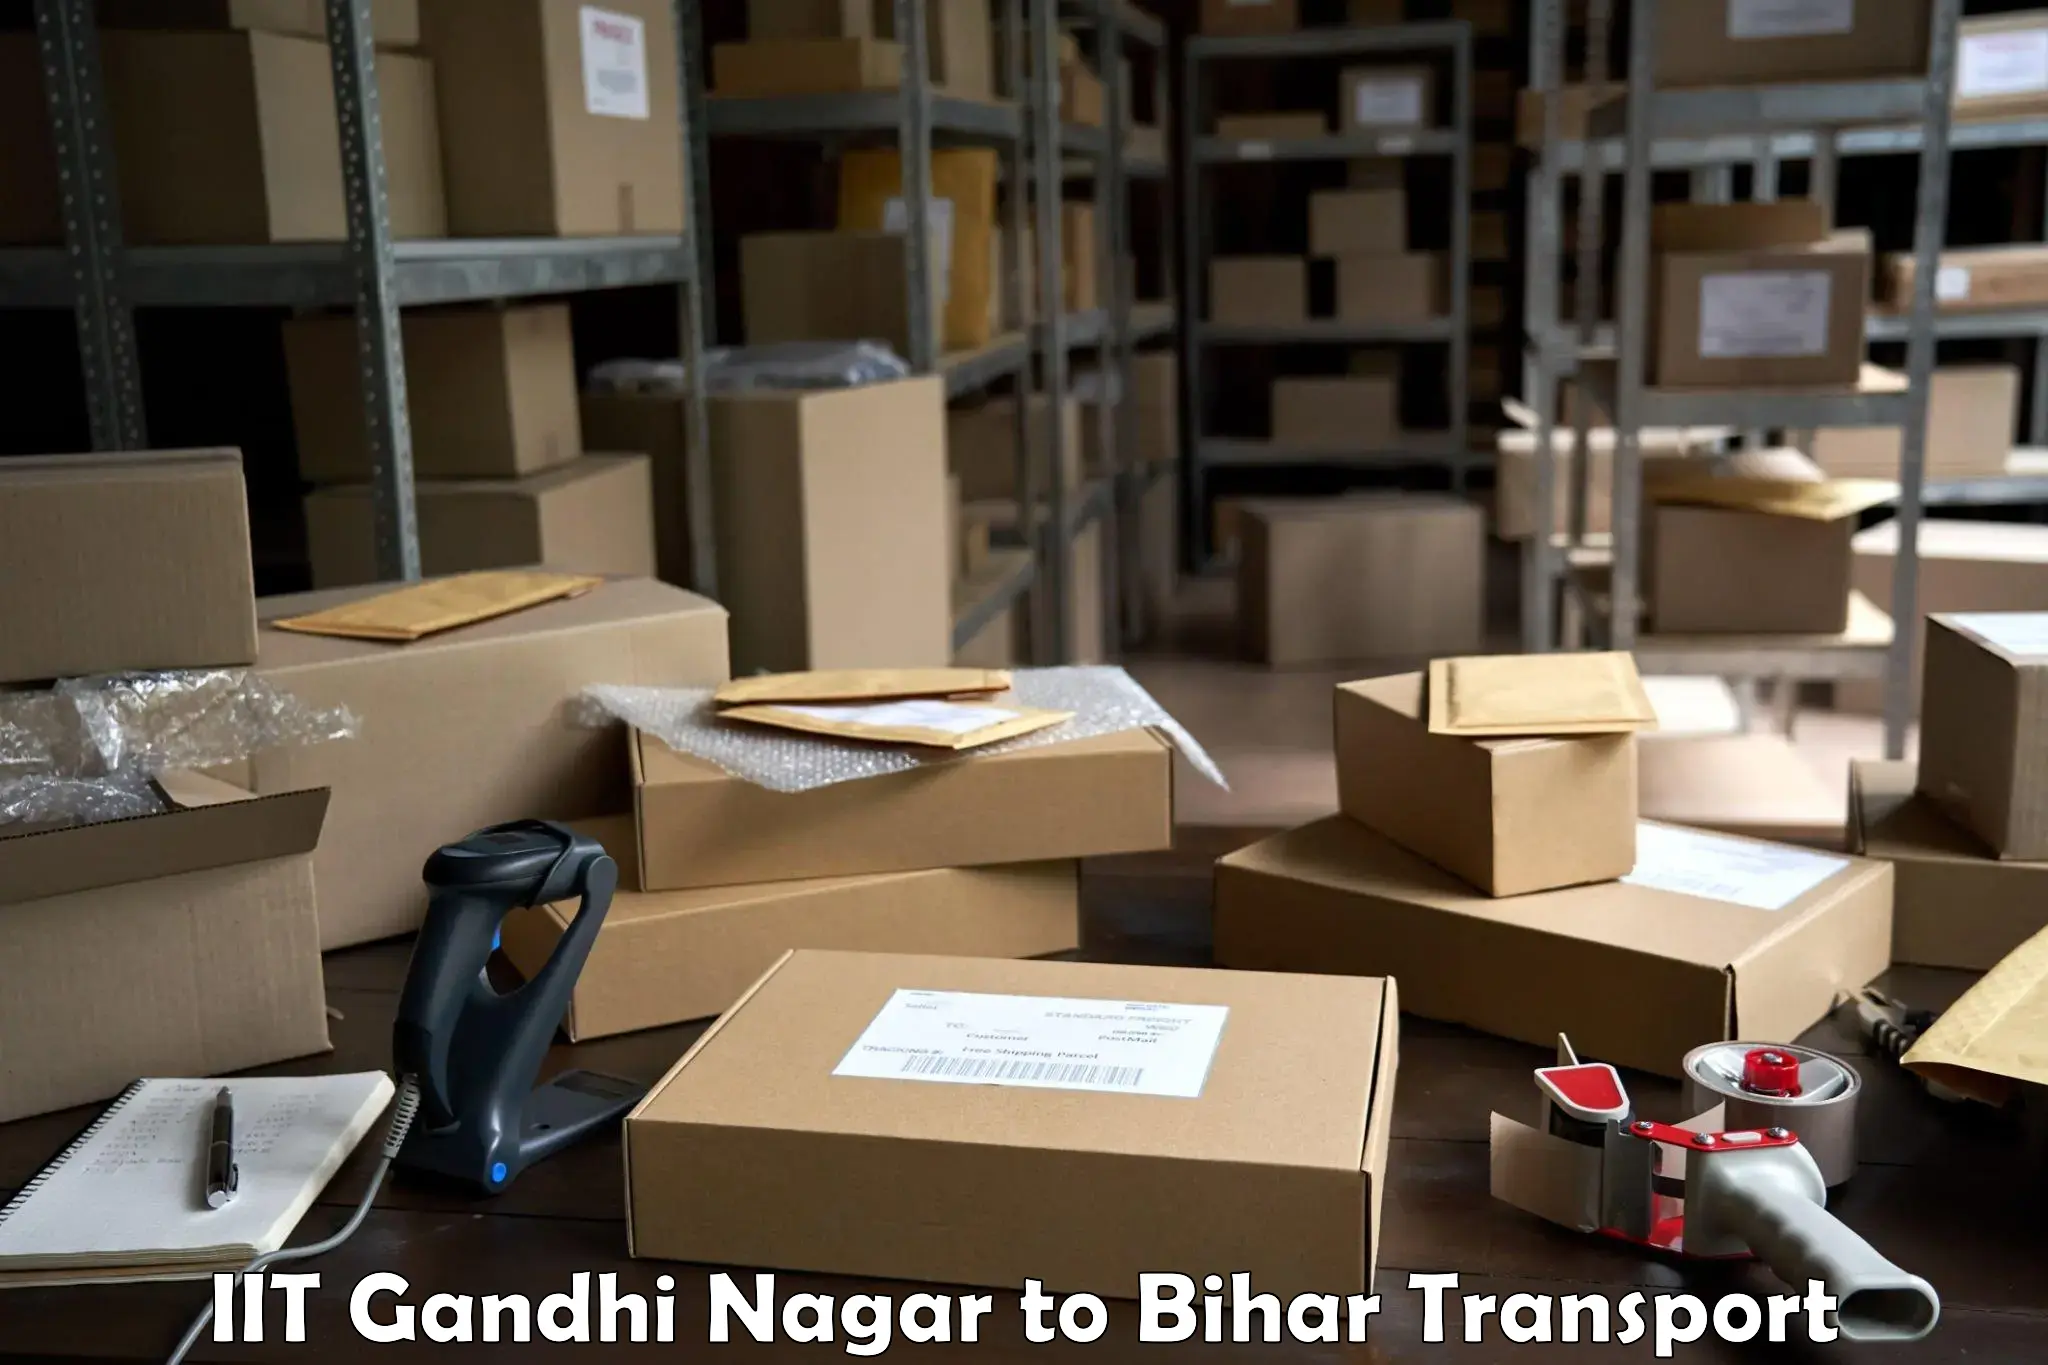 Shipping partner IIT Gandhi Nagar to Danapur